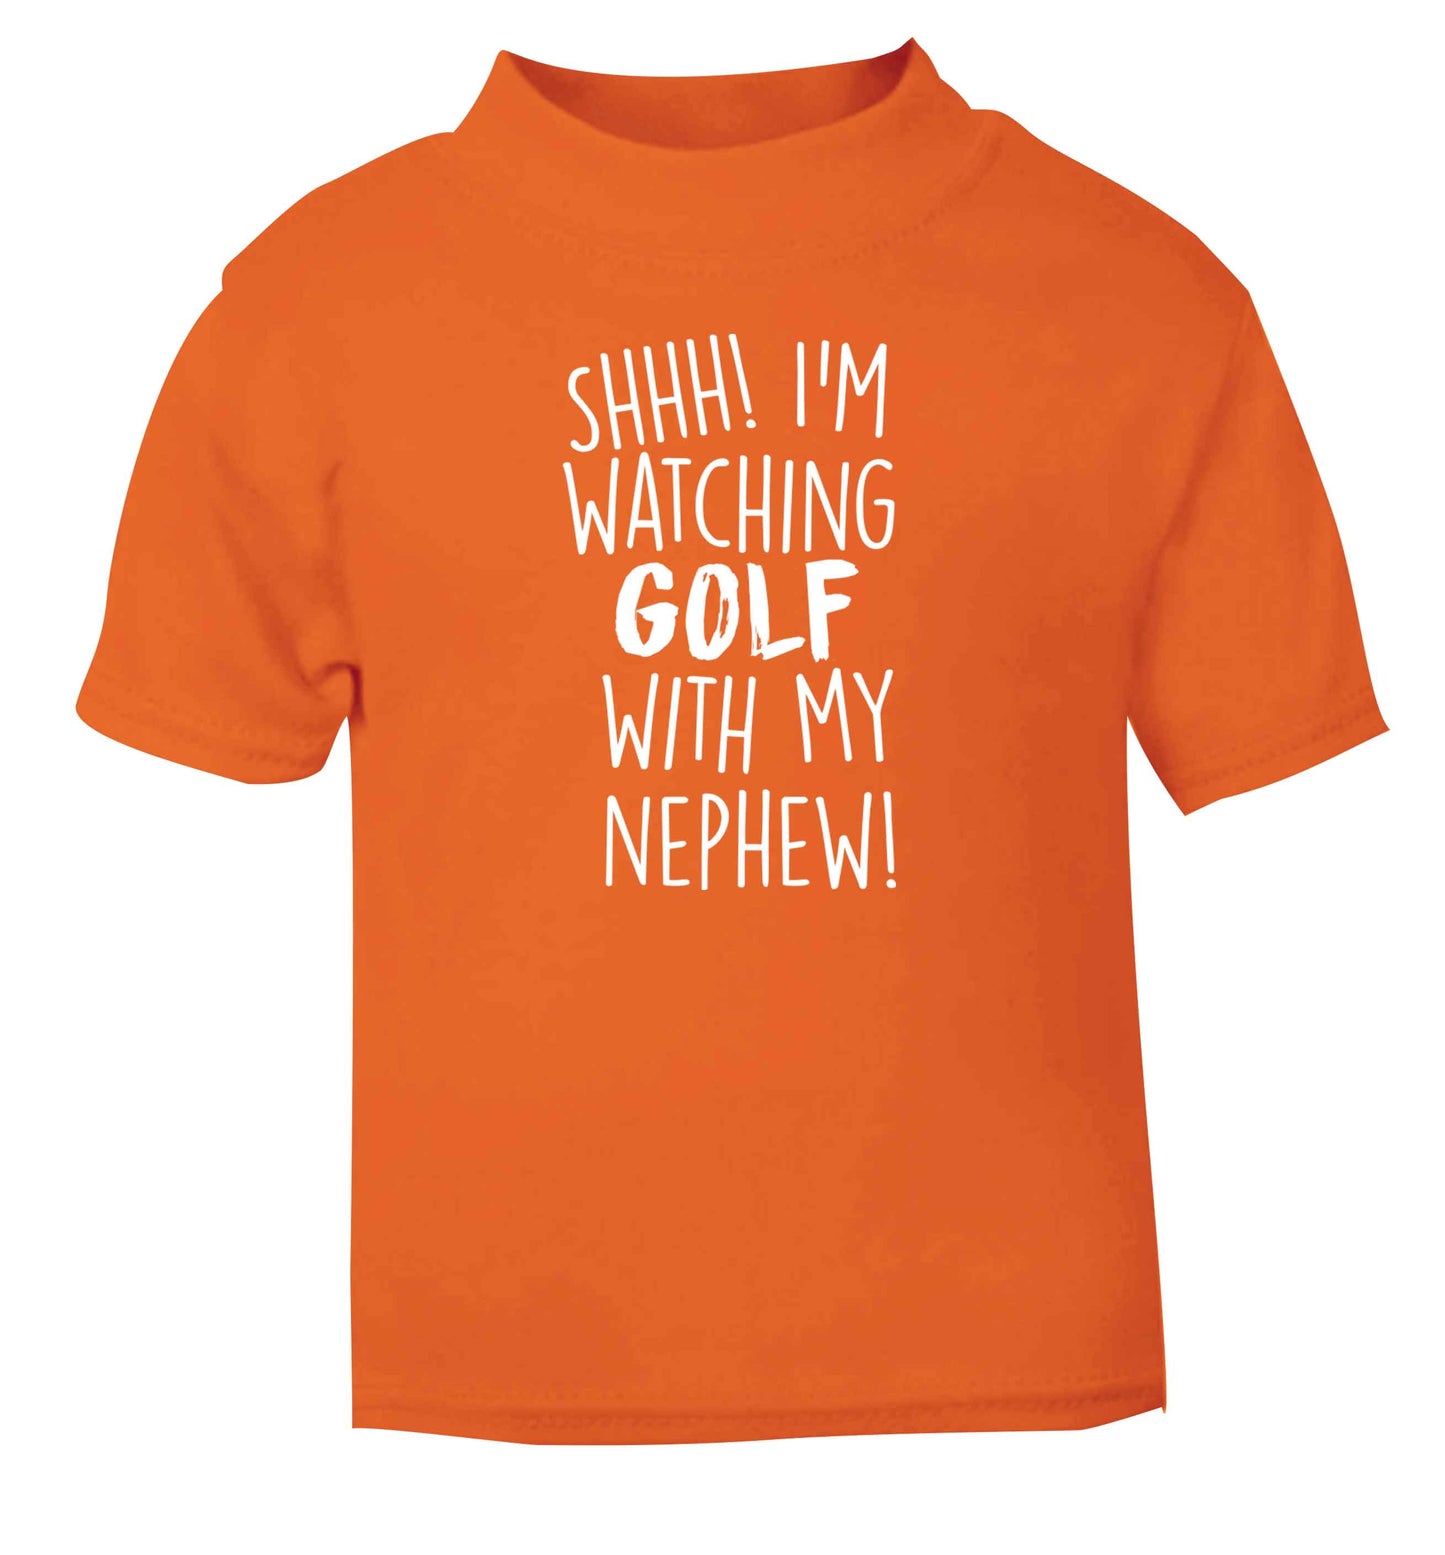 Shh I'm watching golf with my nephew orange Baby Toddler Tshirt 2 Years